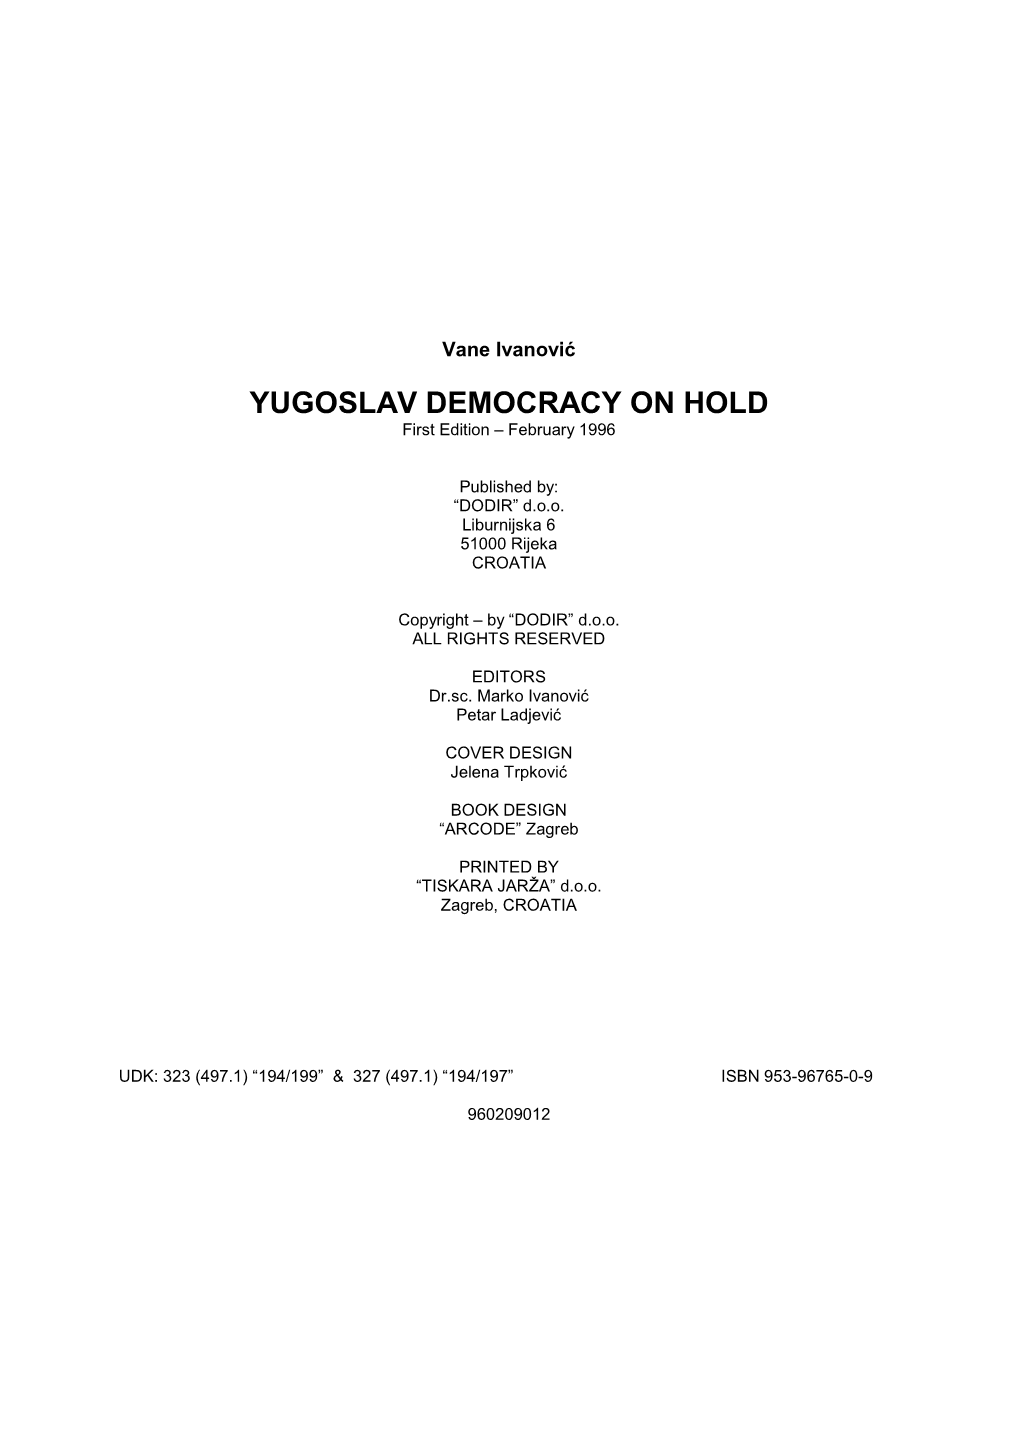 Yugoslav Democracy on Hold